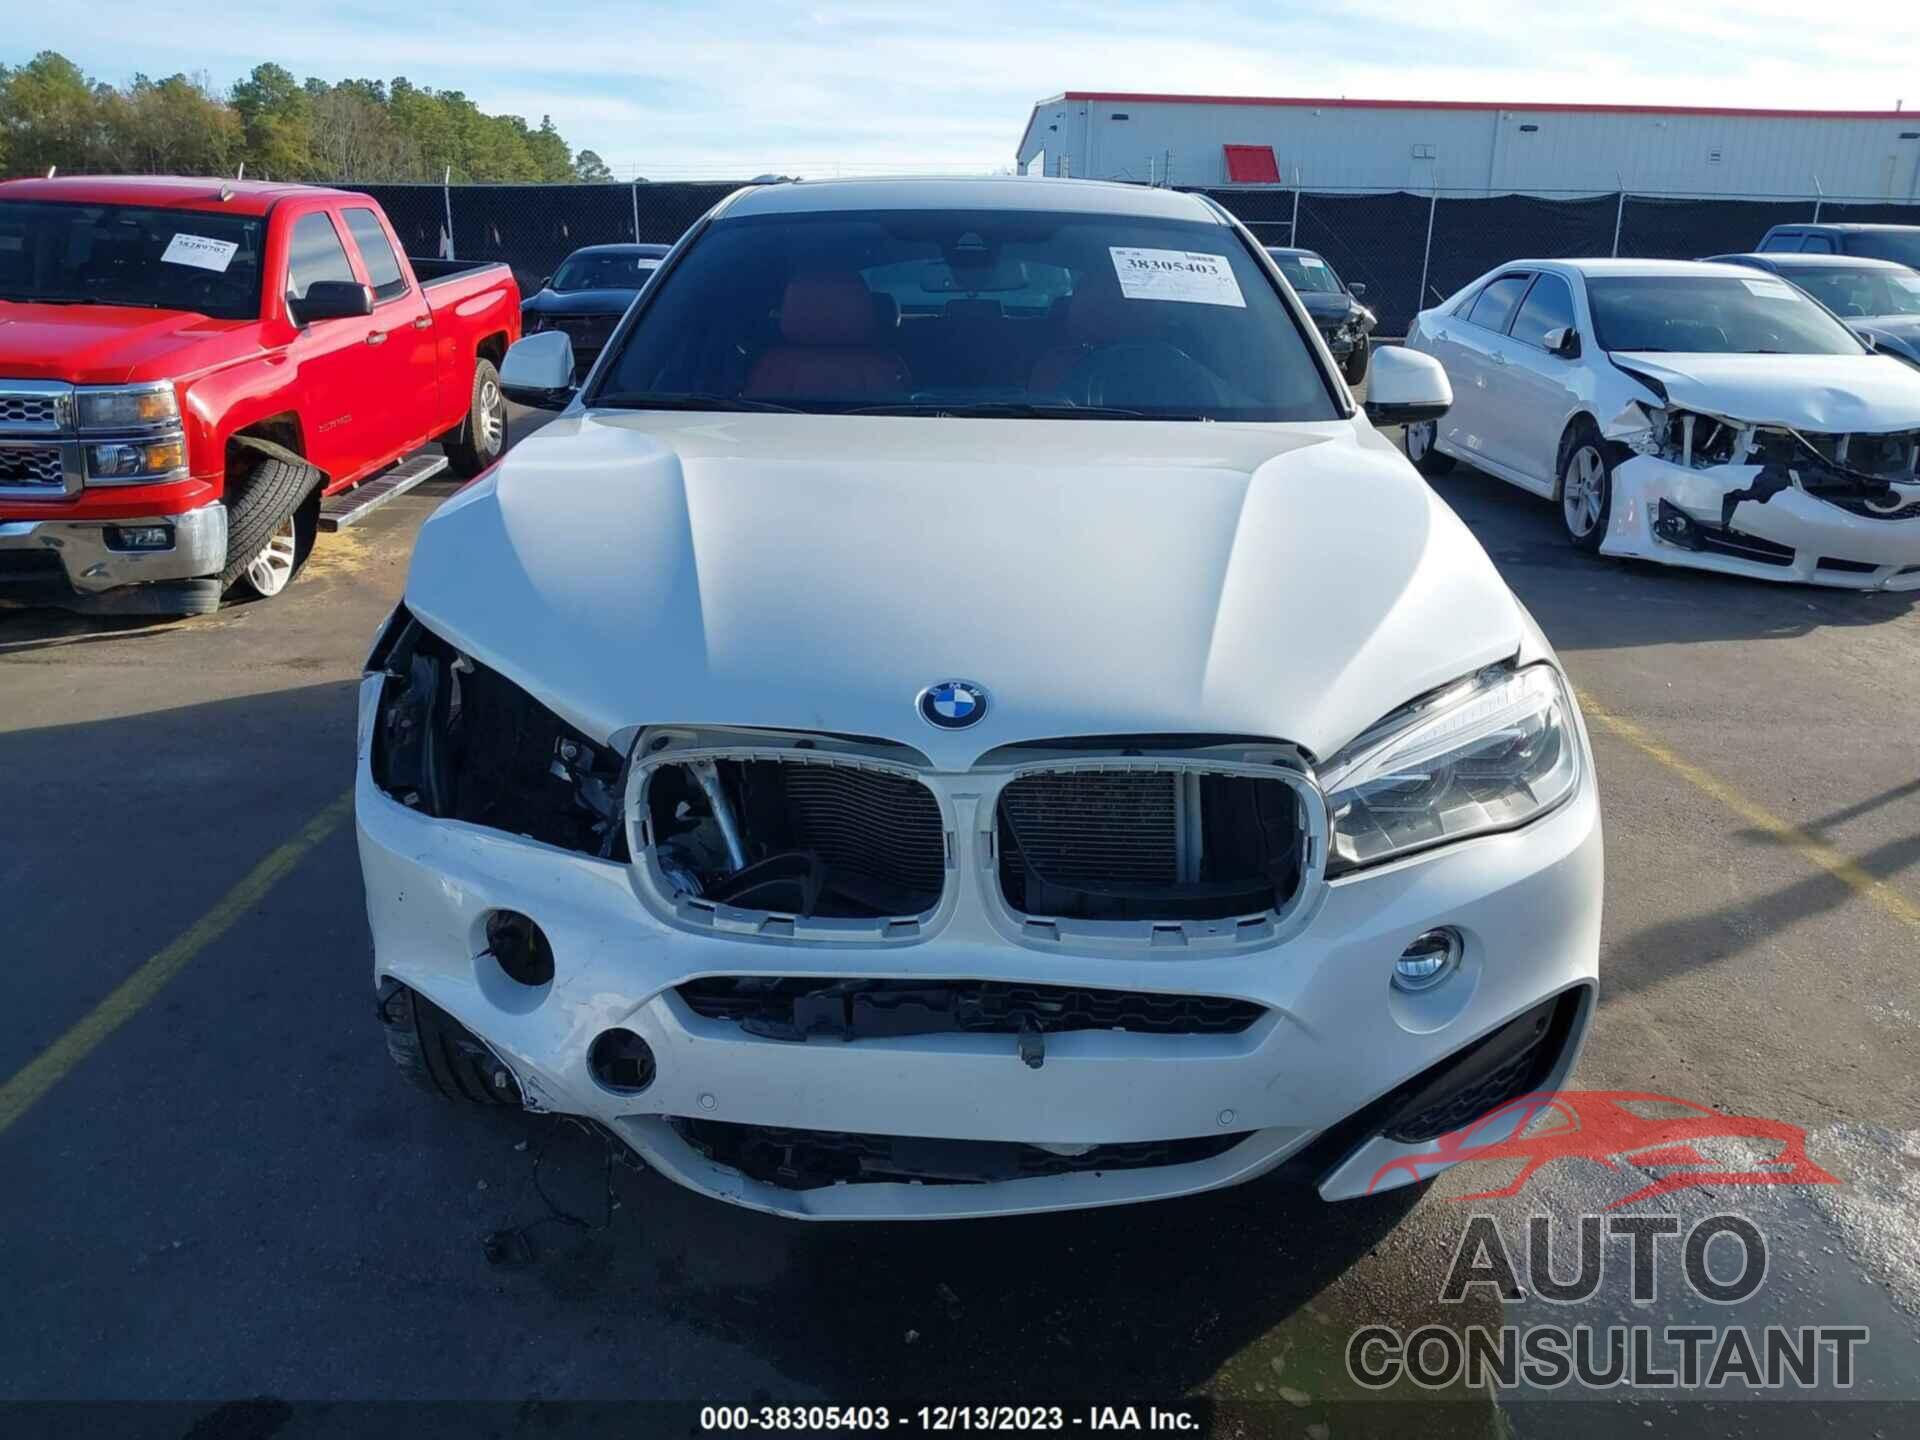 BMW X6 2019 - 5UXKU2C5XK0Z65742